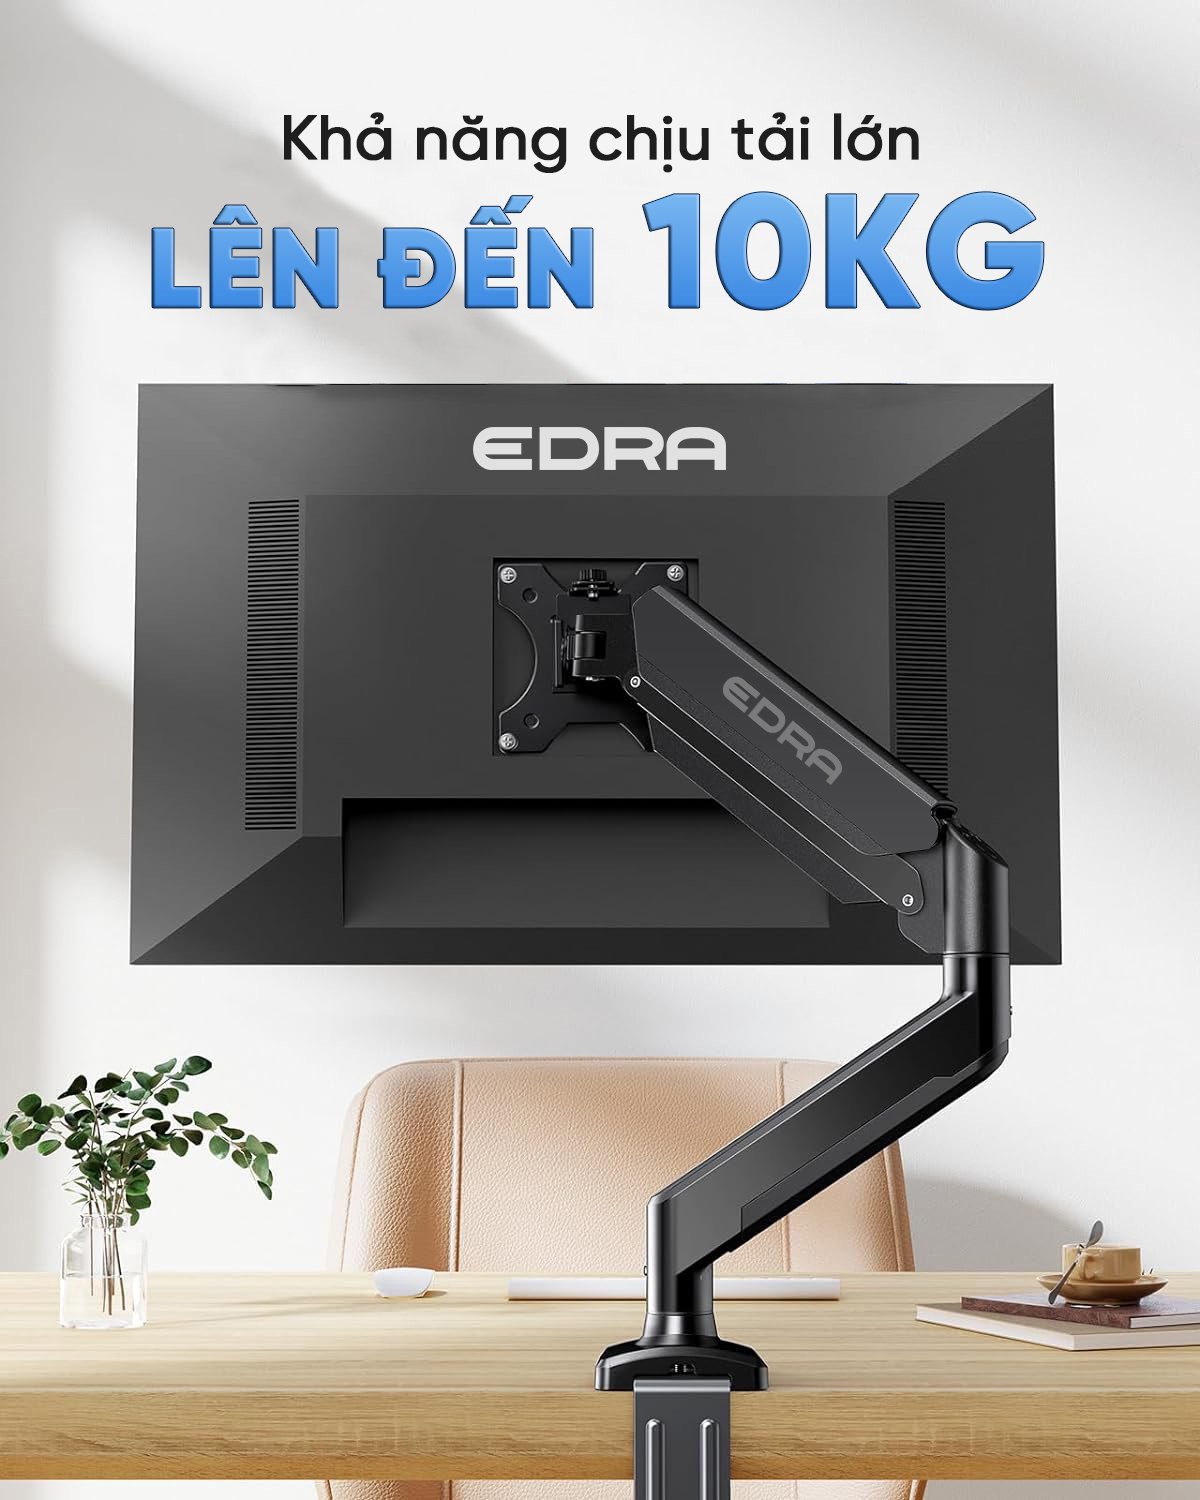 Arm màn hình EDRA EMA7302